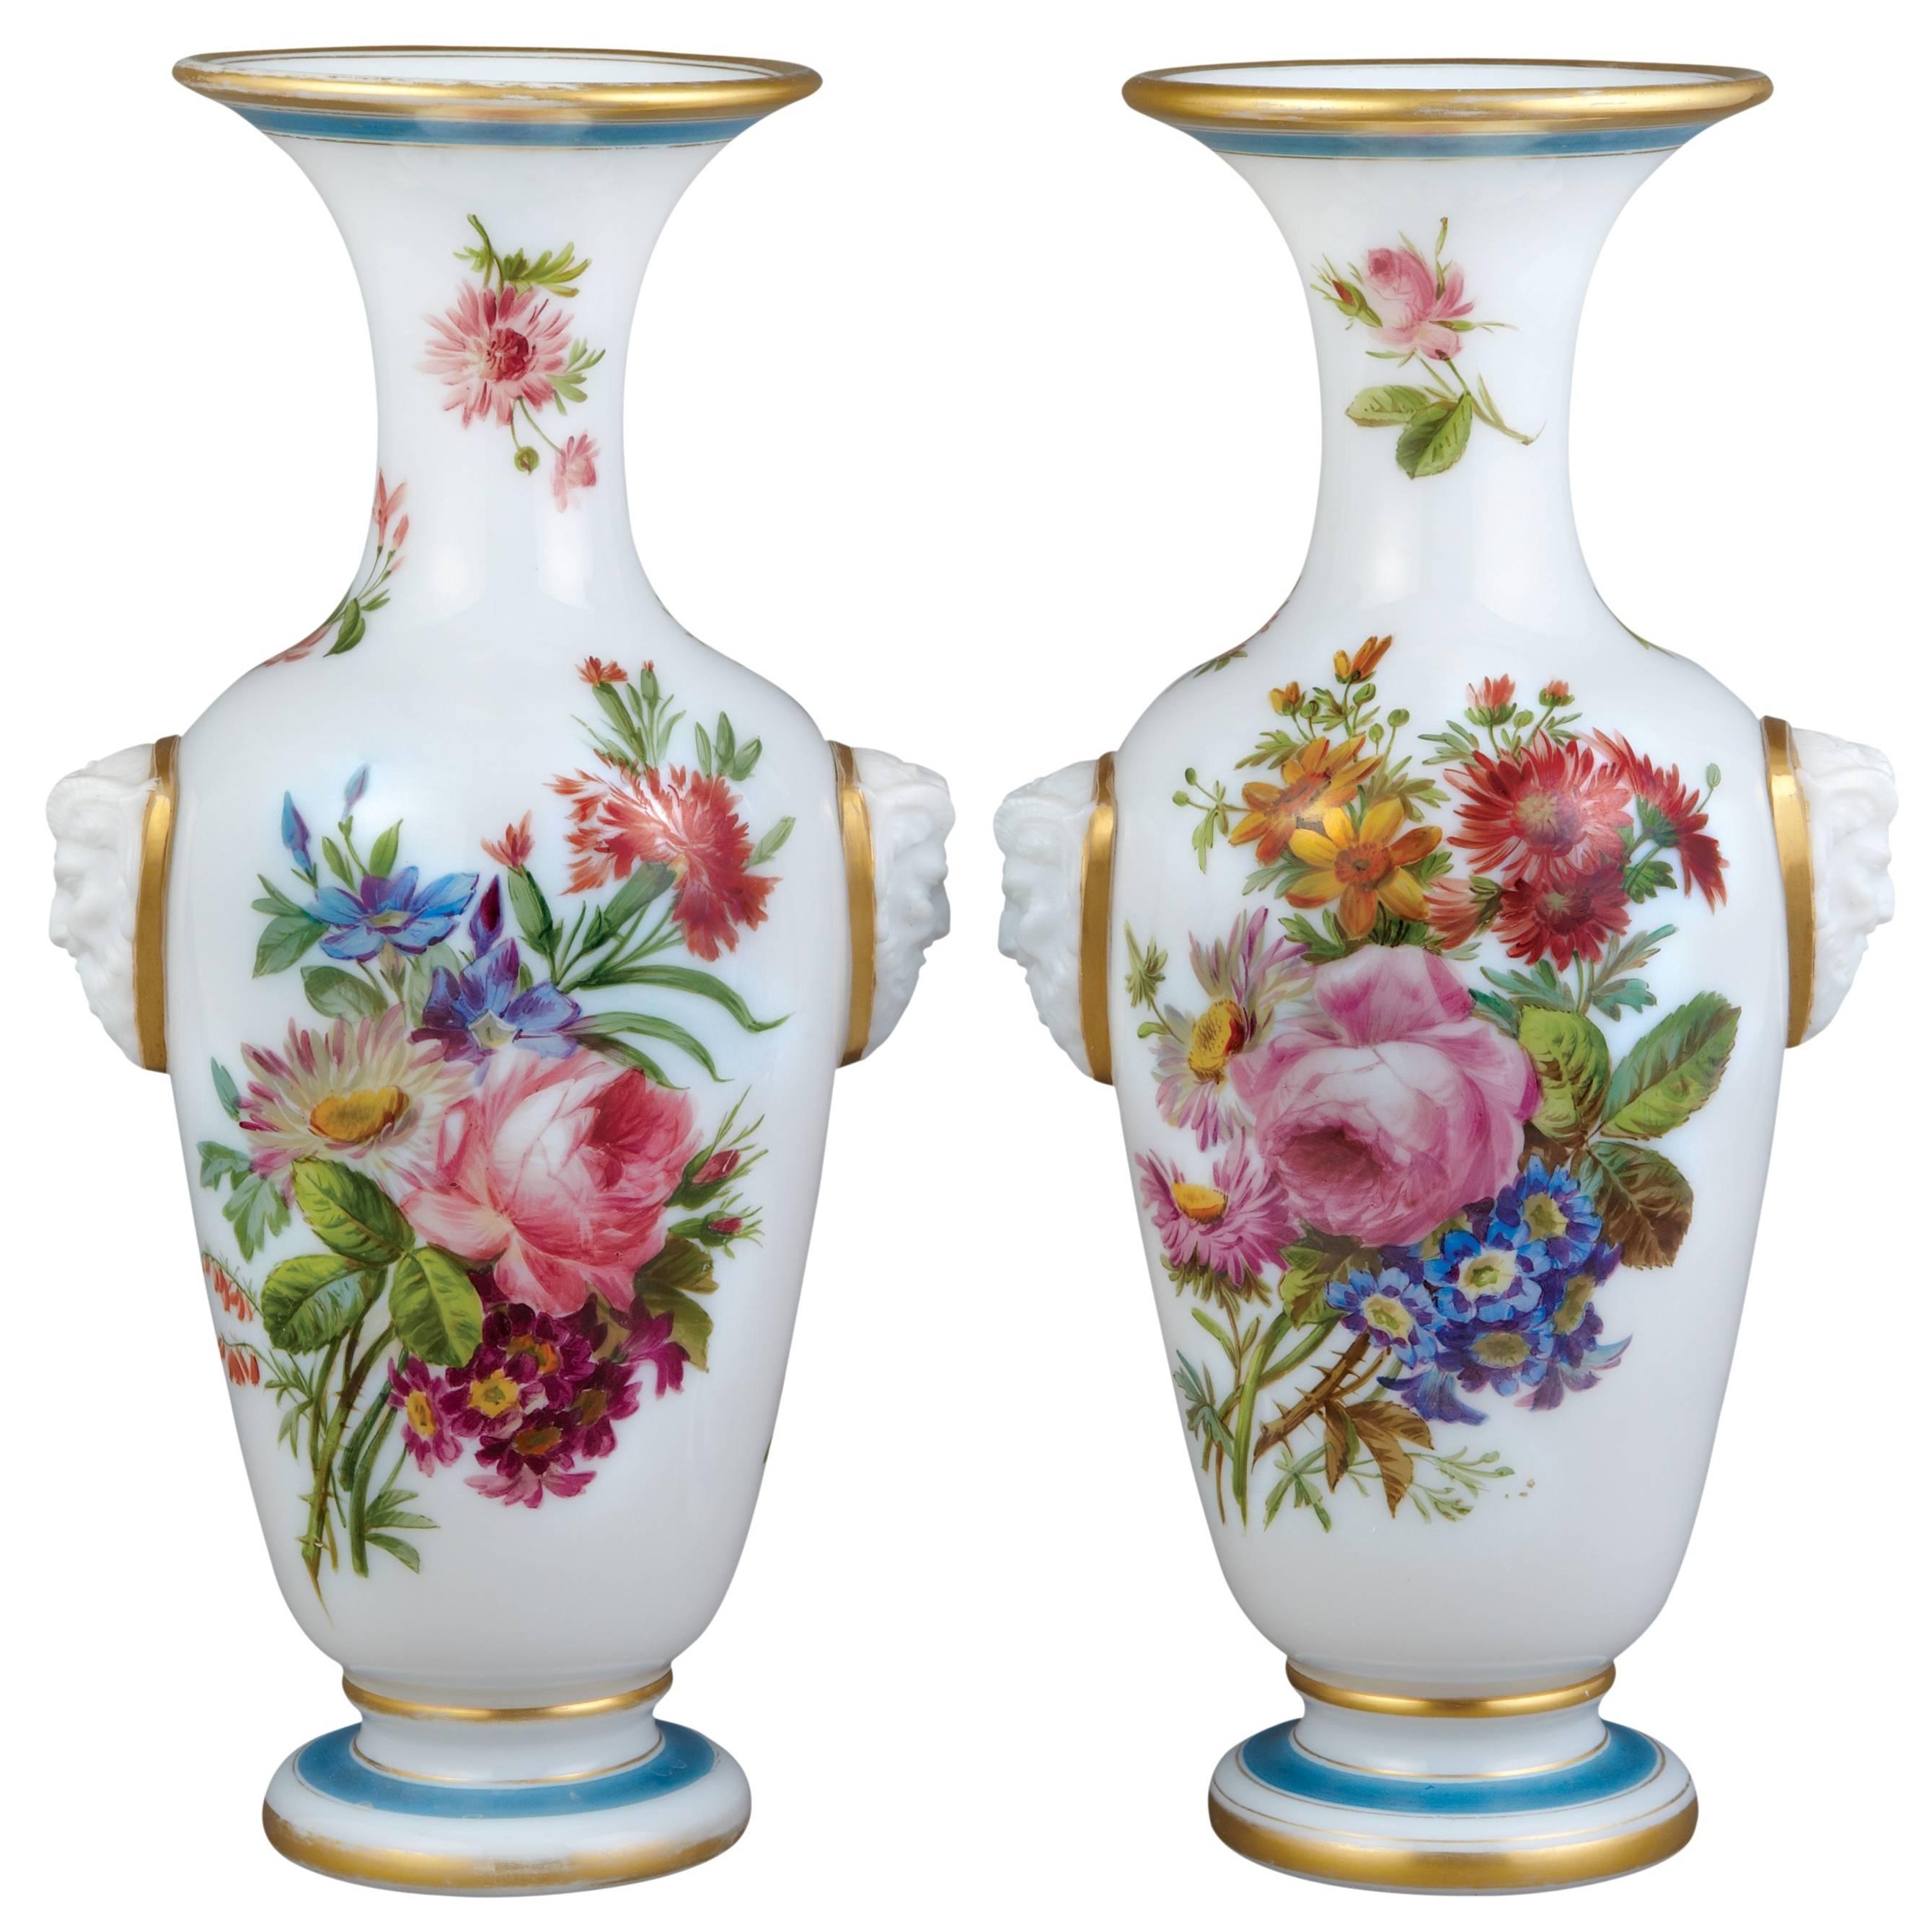 Paar französische Blumenvasen aus Opalglas von Baccarat
Französisch, um 1850
Höhe 35cm, Breite 18cm, Tiefe 14cm

Diese Opalglasvasen von Baccarat haben eine traditionelle Form mit einem weiß geschliffenen, bauchigen Körper, einem ausladenden Fuß und